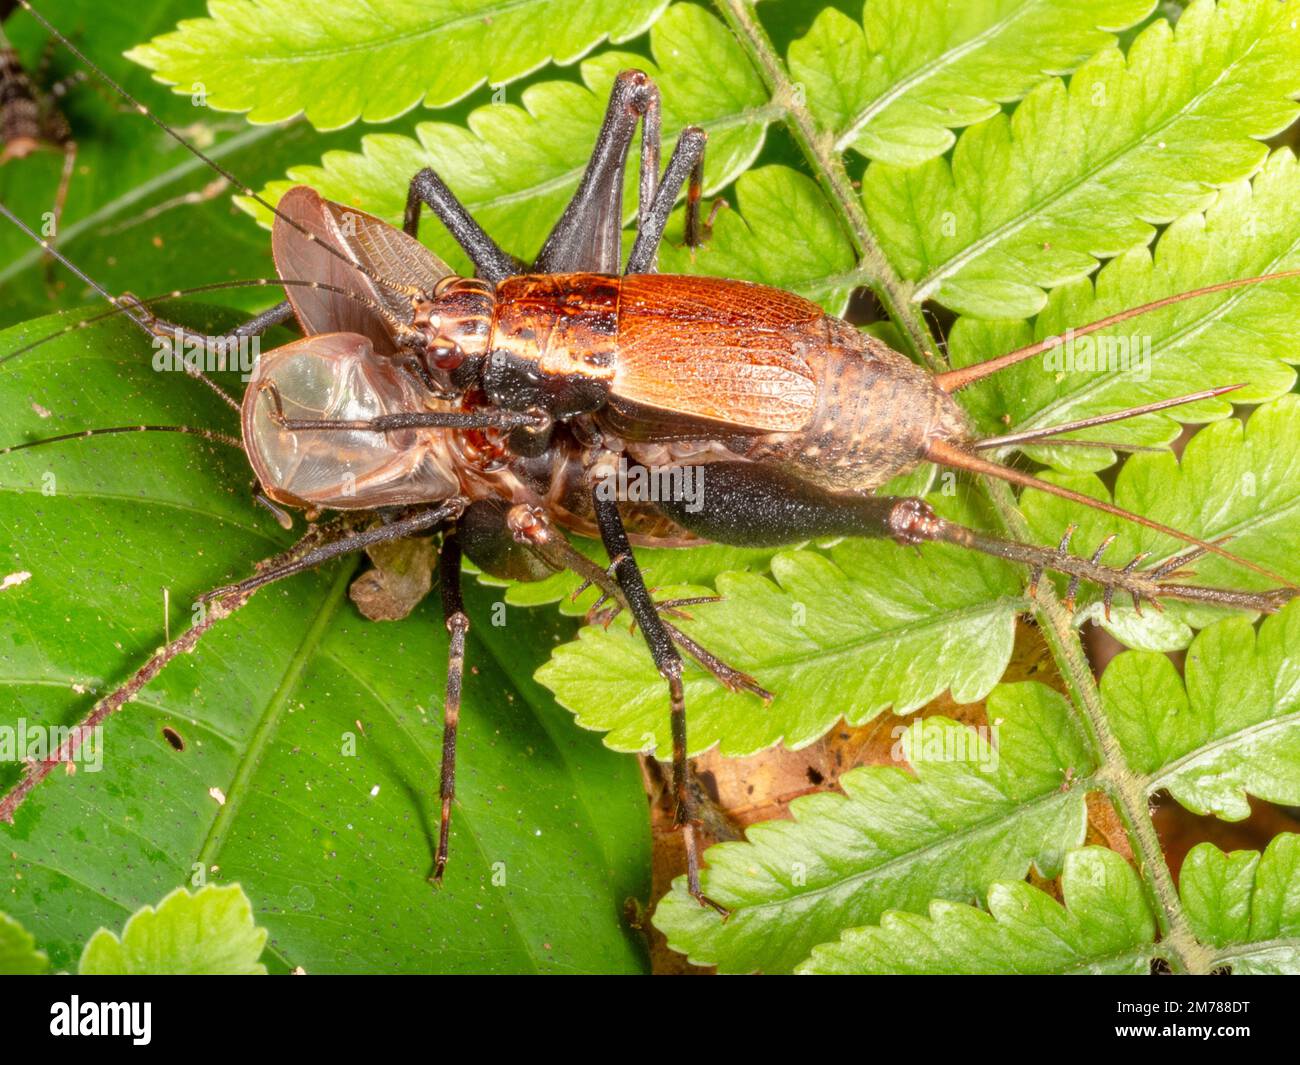 Accoppiamento di crickets. La femmina monta la parte posteriore del maschio le cui ali sono ripiegate in avanti. Nella foresta pluviale, provincia di Orellana, Ecuador Foto Stock